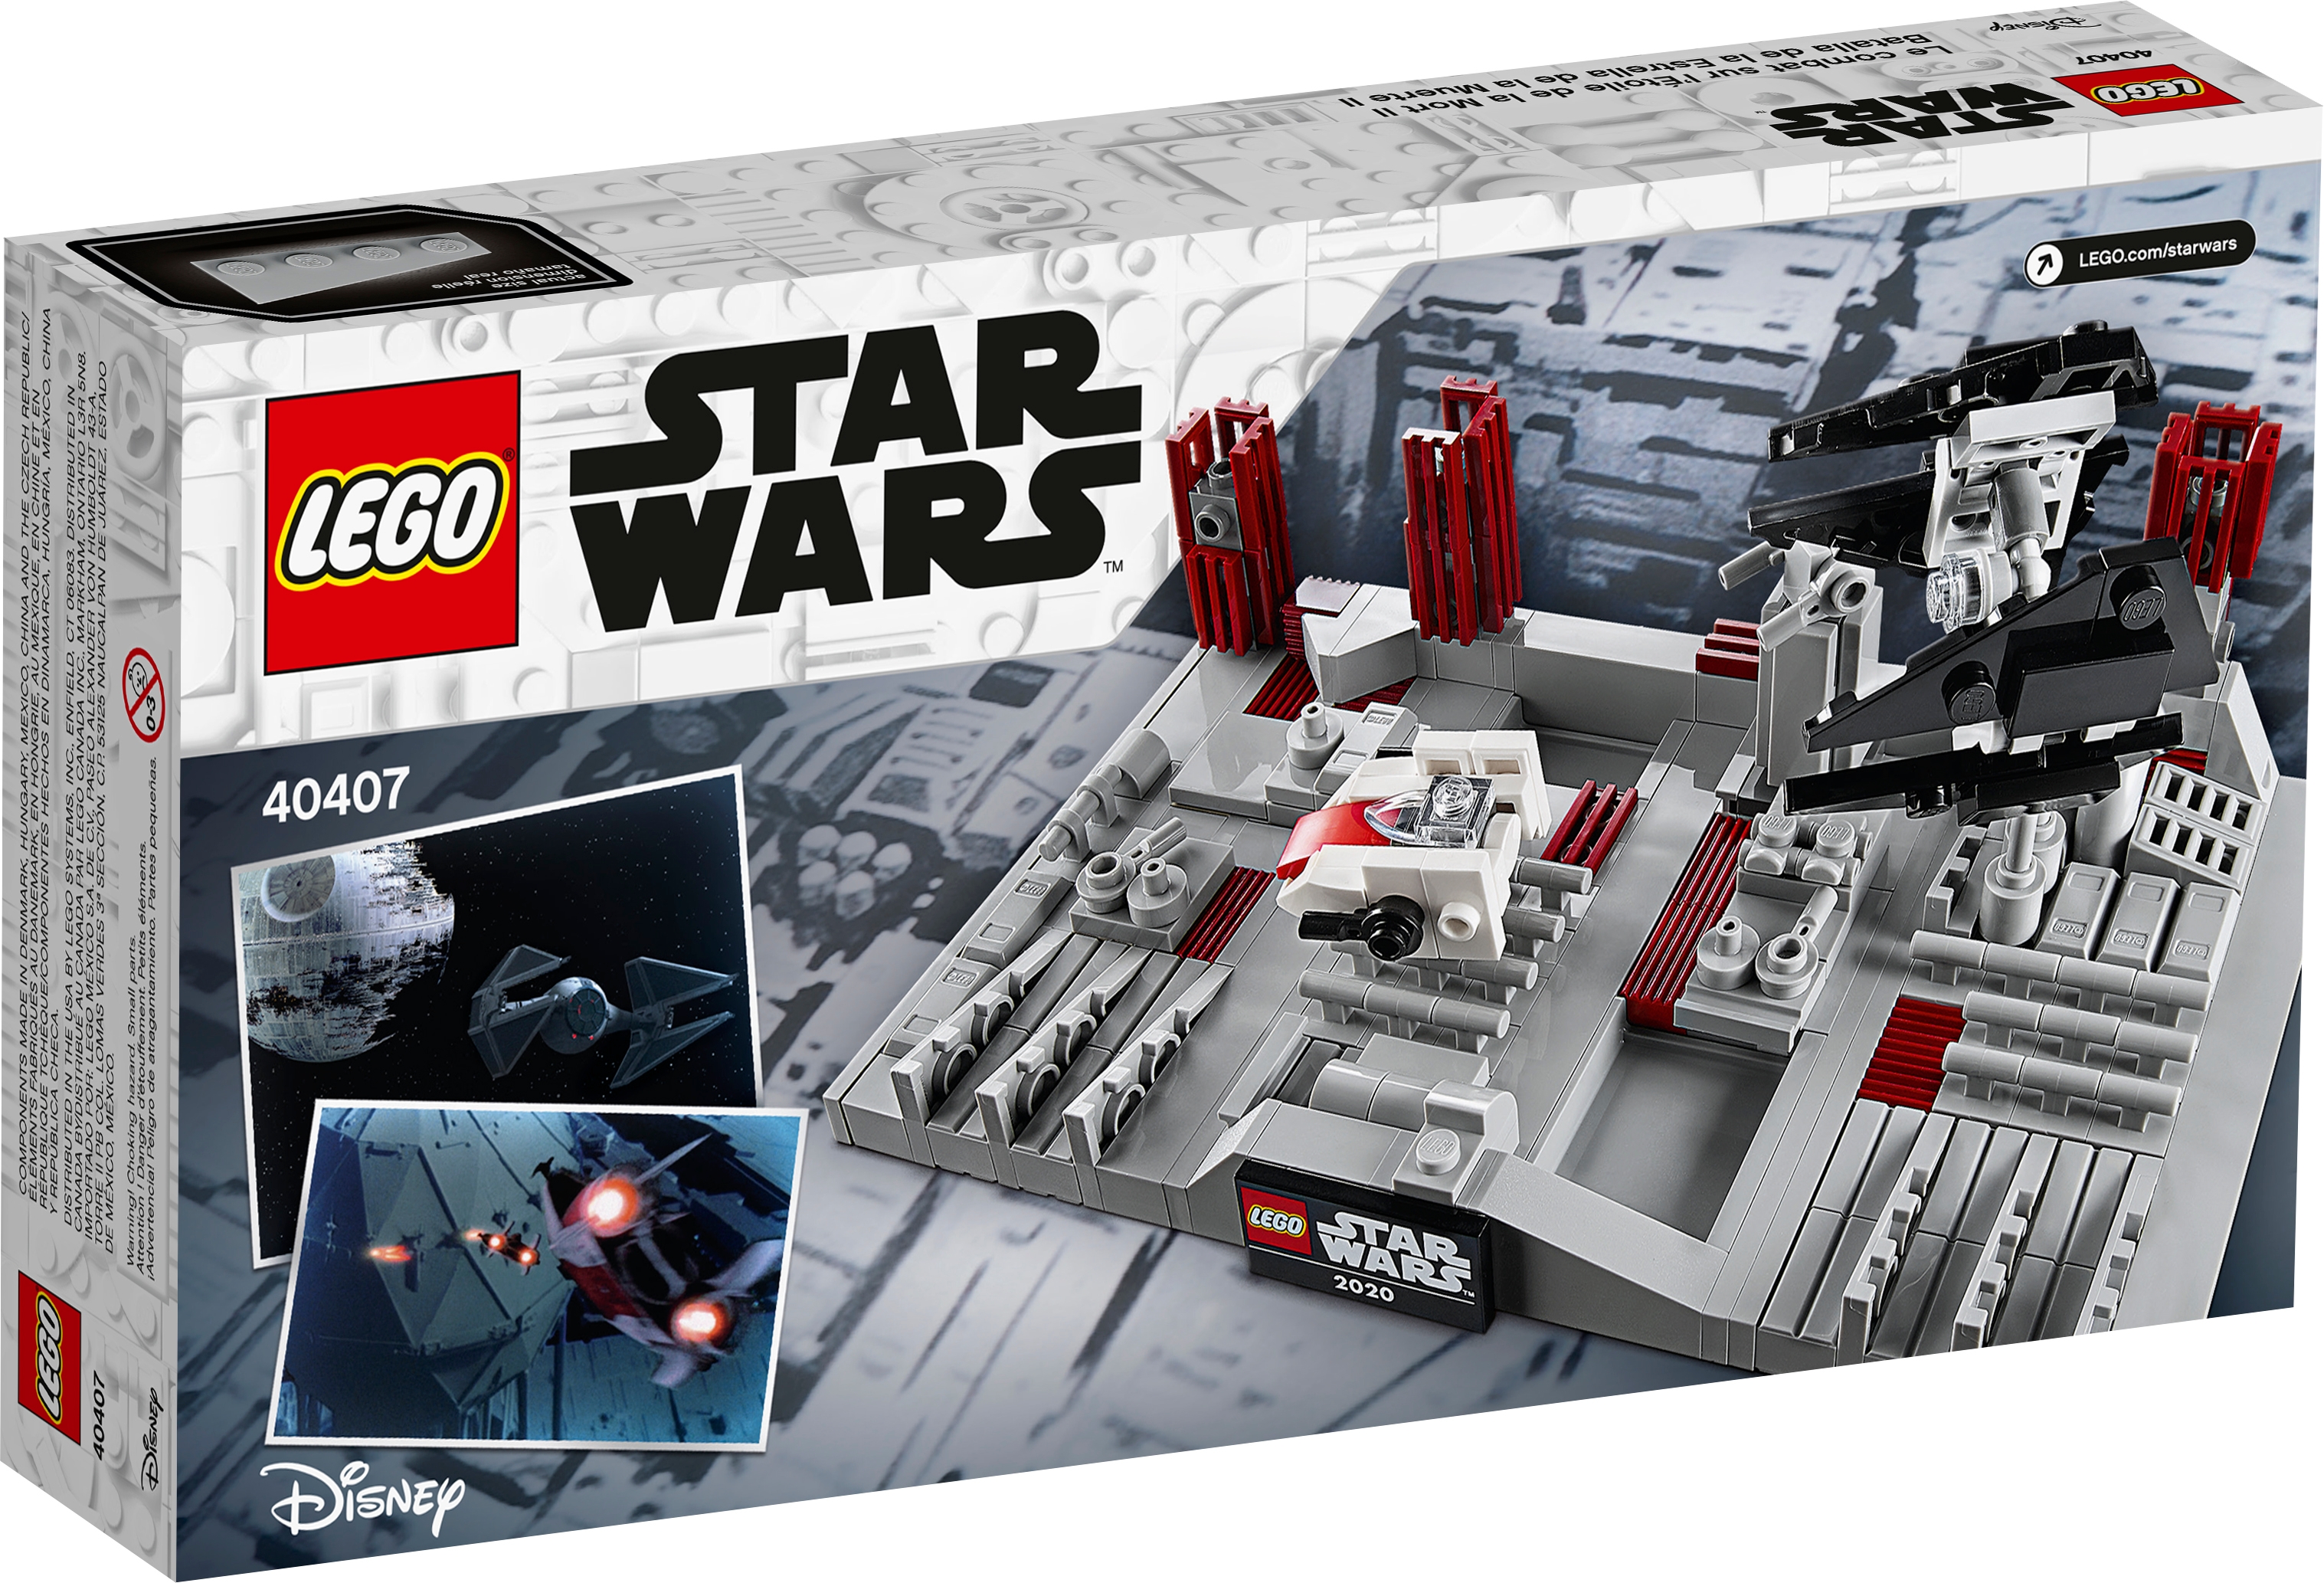 40407 LEGO STAR WARS BNISB Death Star II Battle AU 